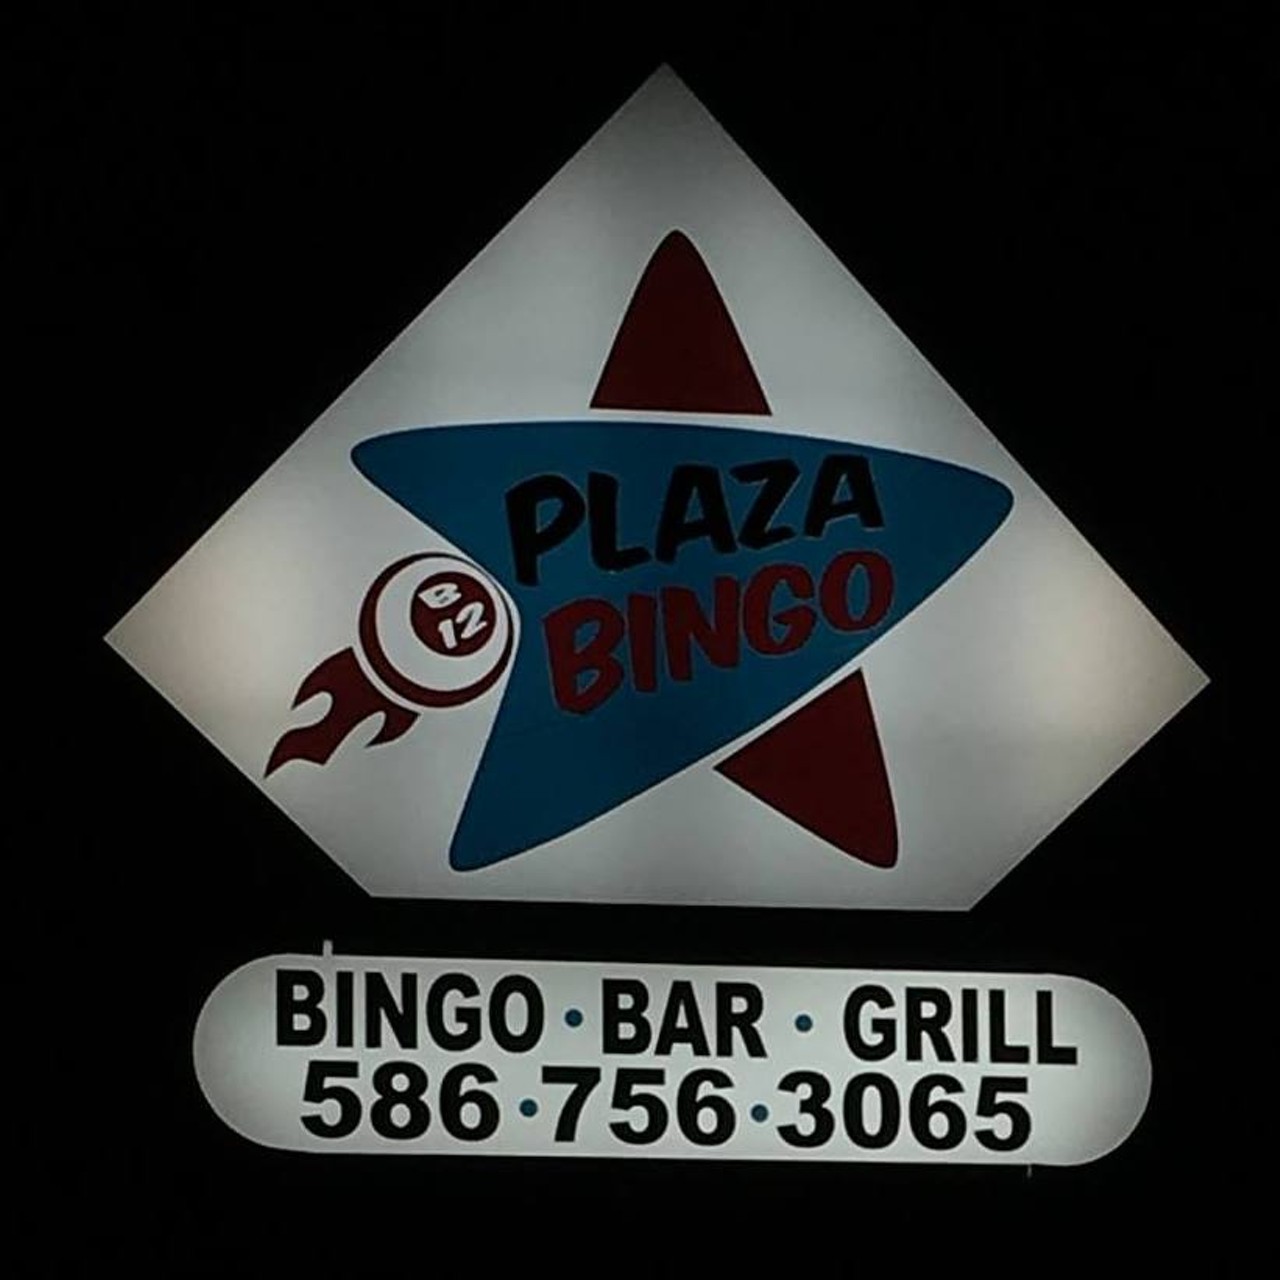 Plaza Bingo &#150; Hosts Bingo 7 days a week at 28655 Schoenherr Road Warren MI, 48088 Phone: 586-756-3065. Photo.